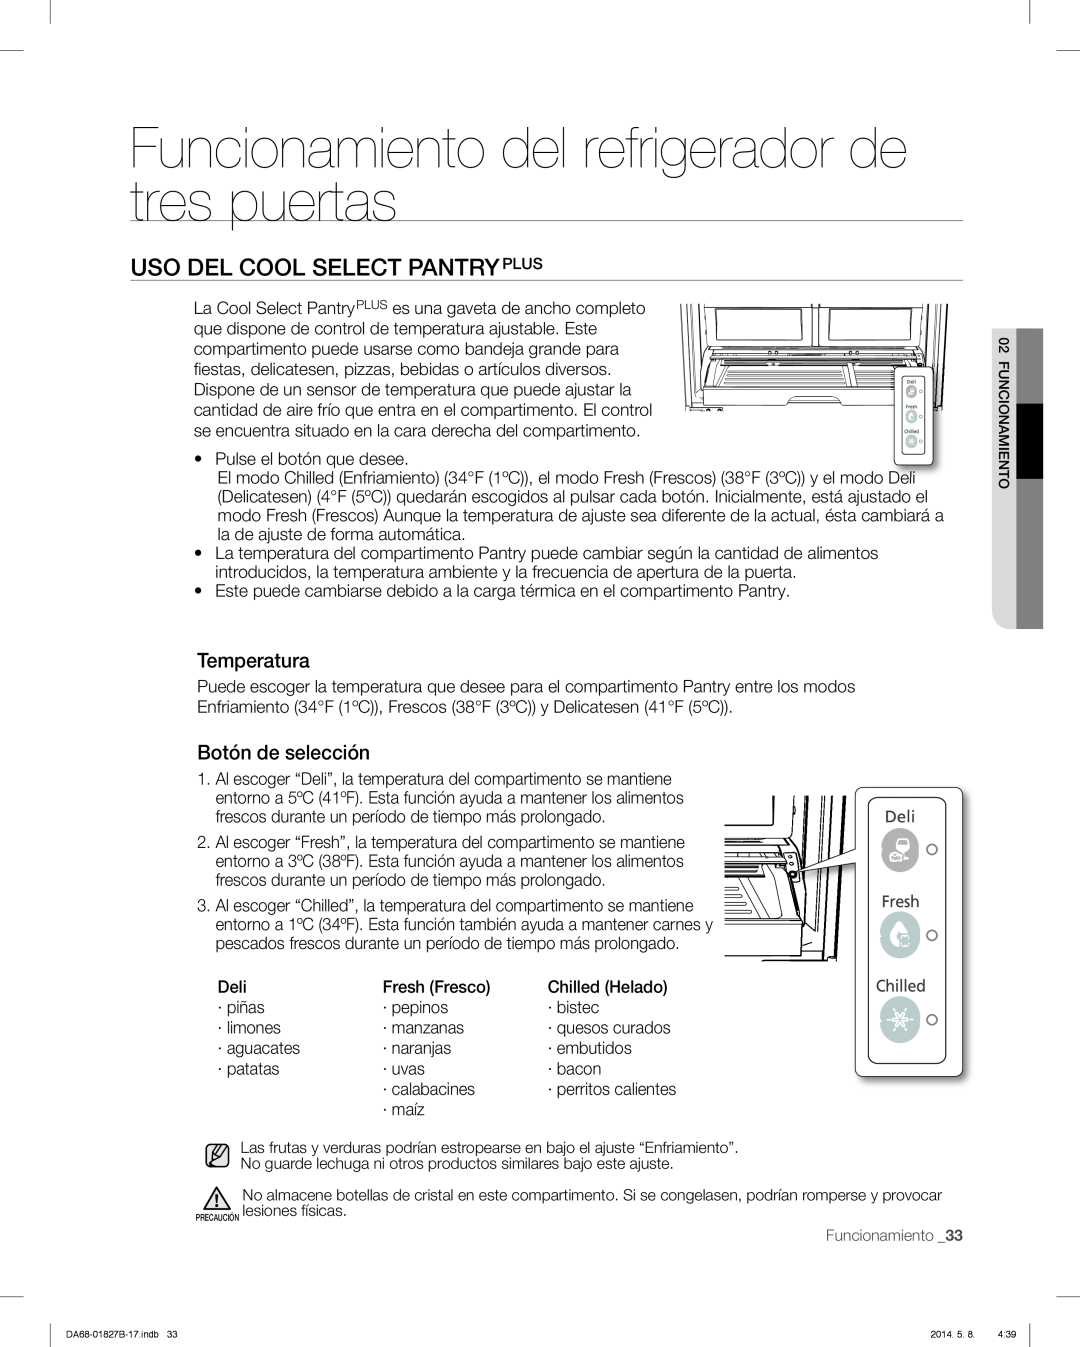 Samsung RFG237AABP user manual Uso Del Cool Select Pantryplus, Funcionamiento del refrigerador de tres puertas, Temperatura 